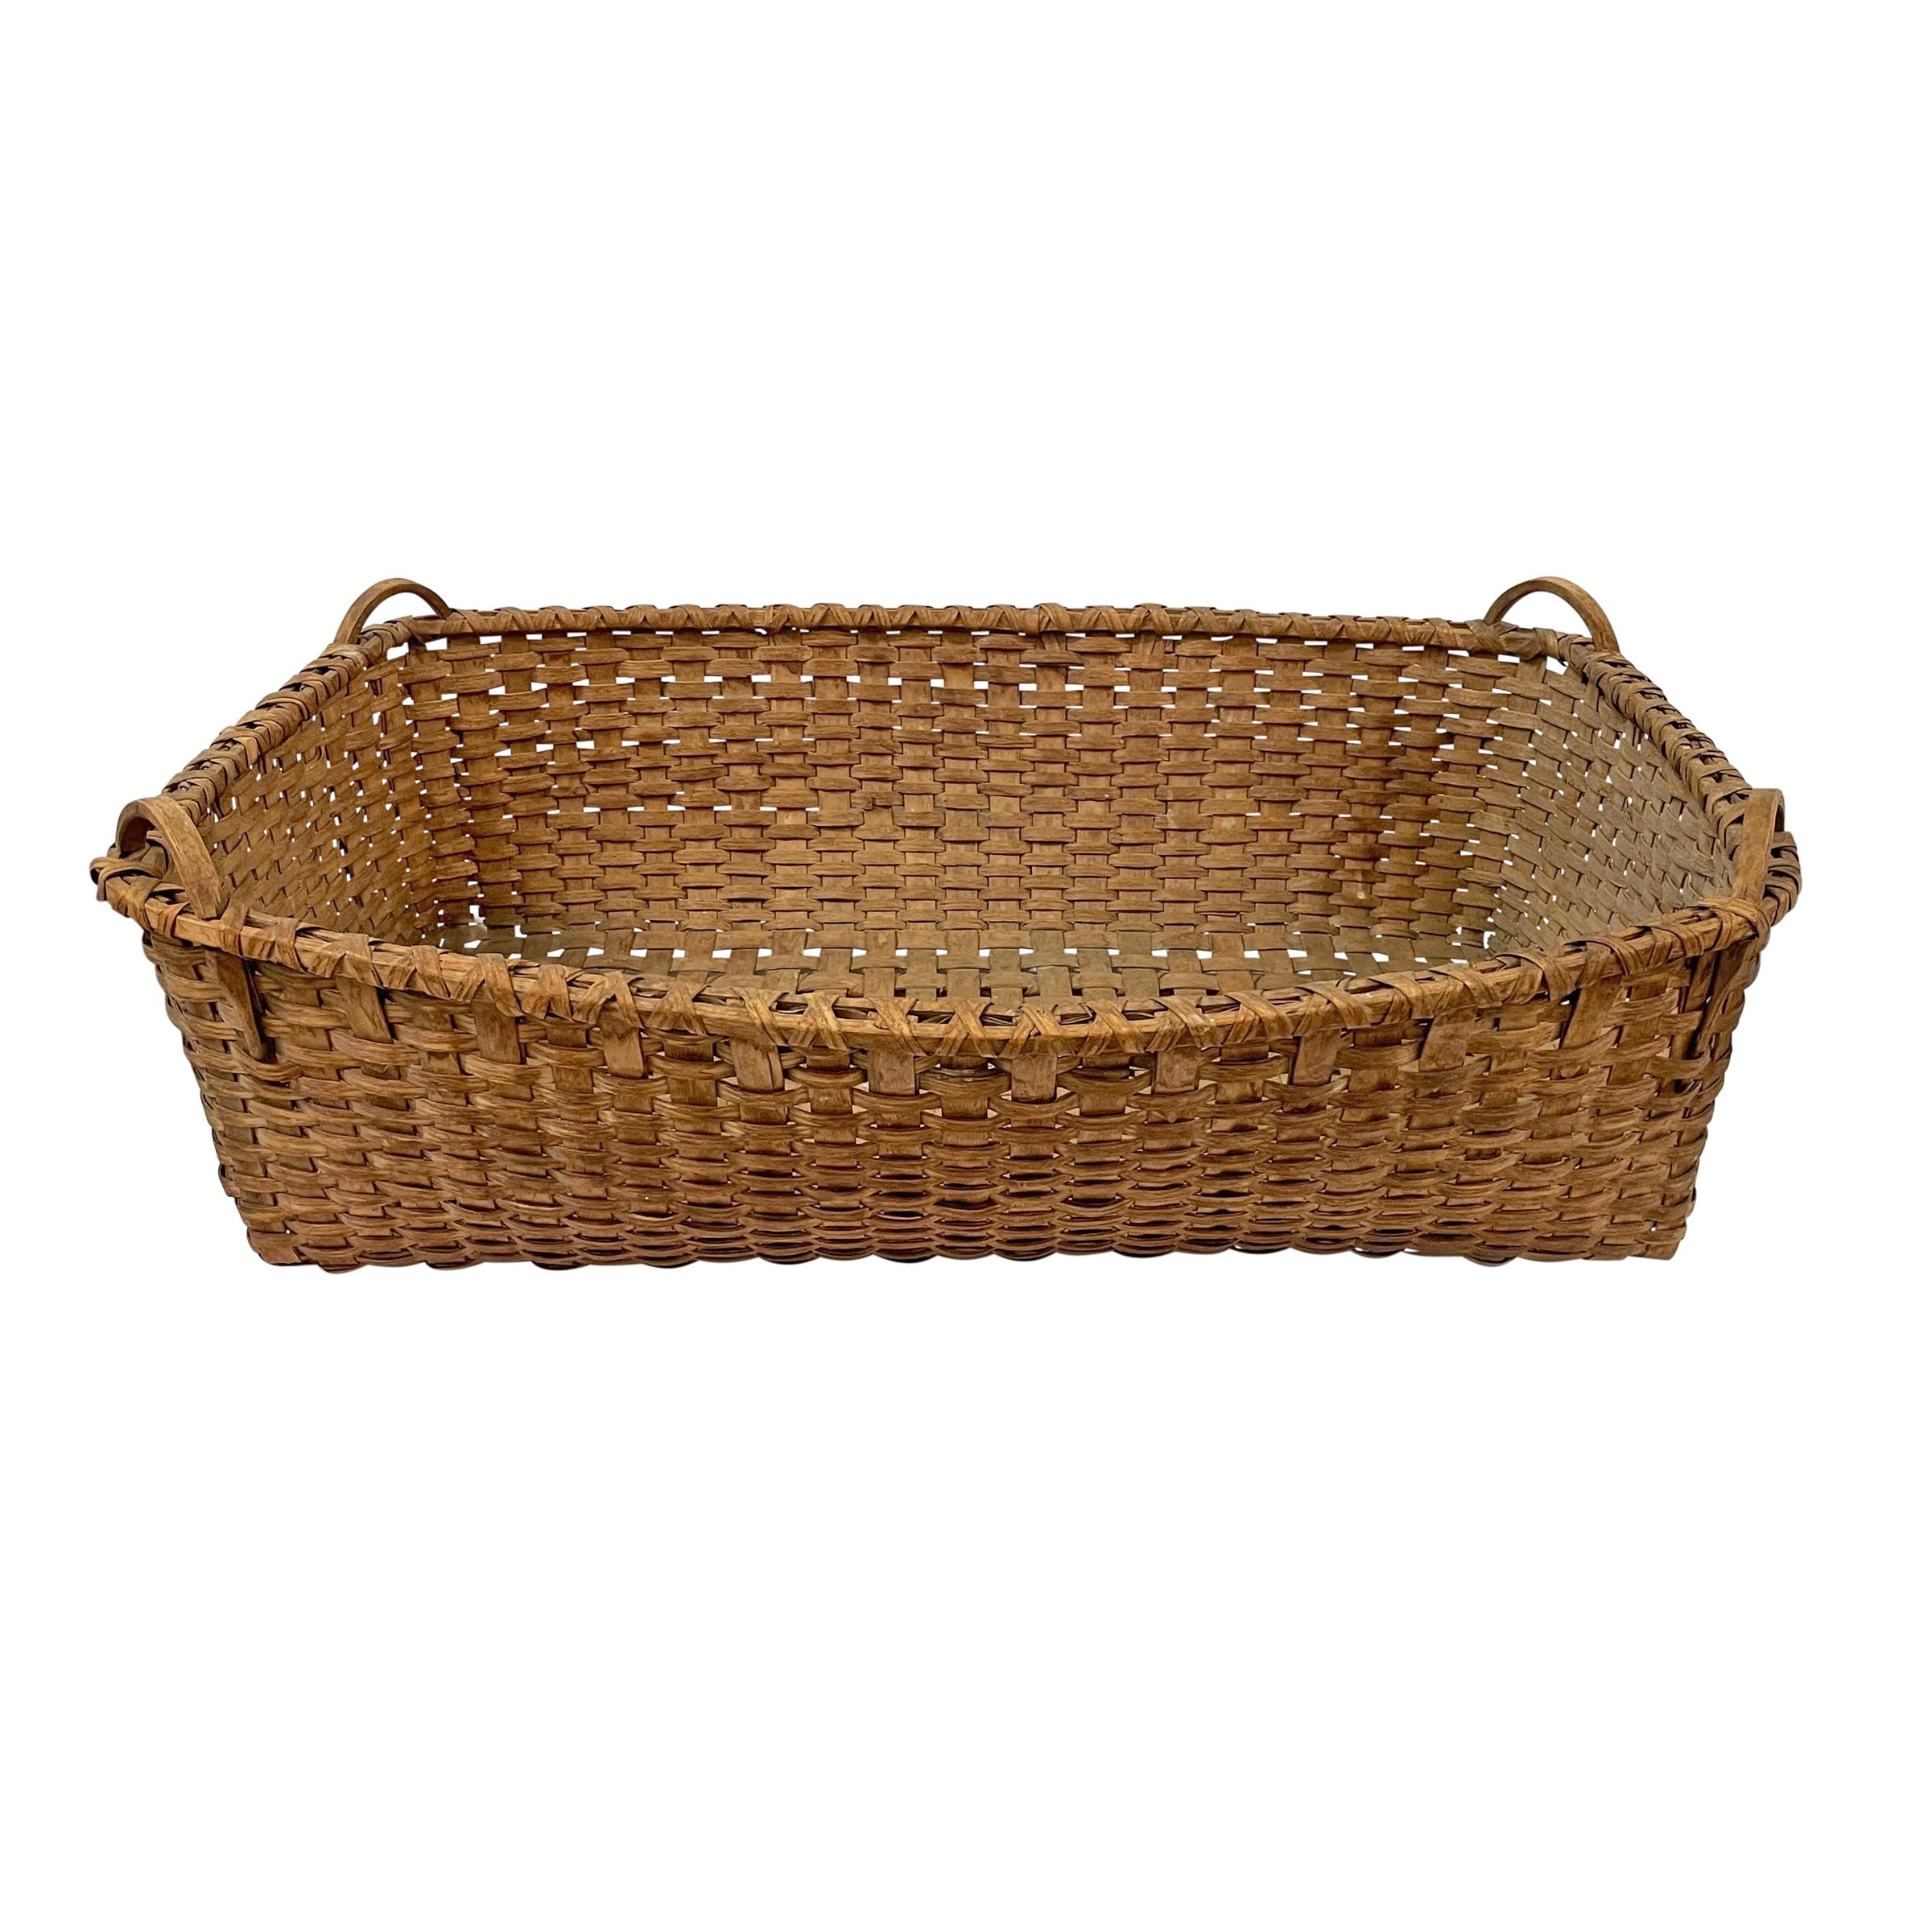 Rustic 19th Century American Tobacco Leaf Basket